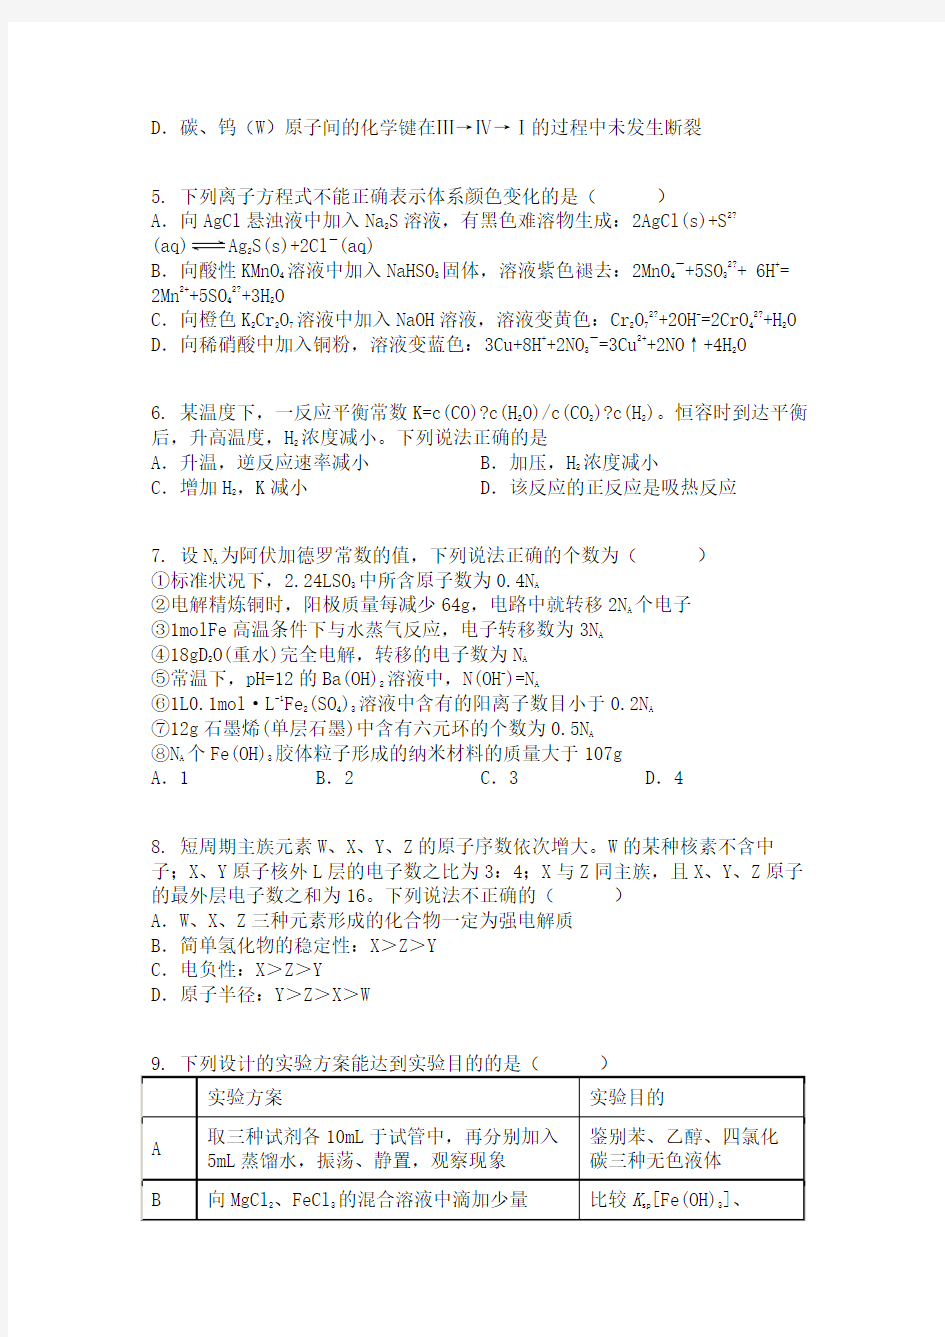 天津市滨海新区塘沽第一中学2020届高三毕业班复课模拟检测化学试题